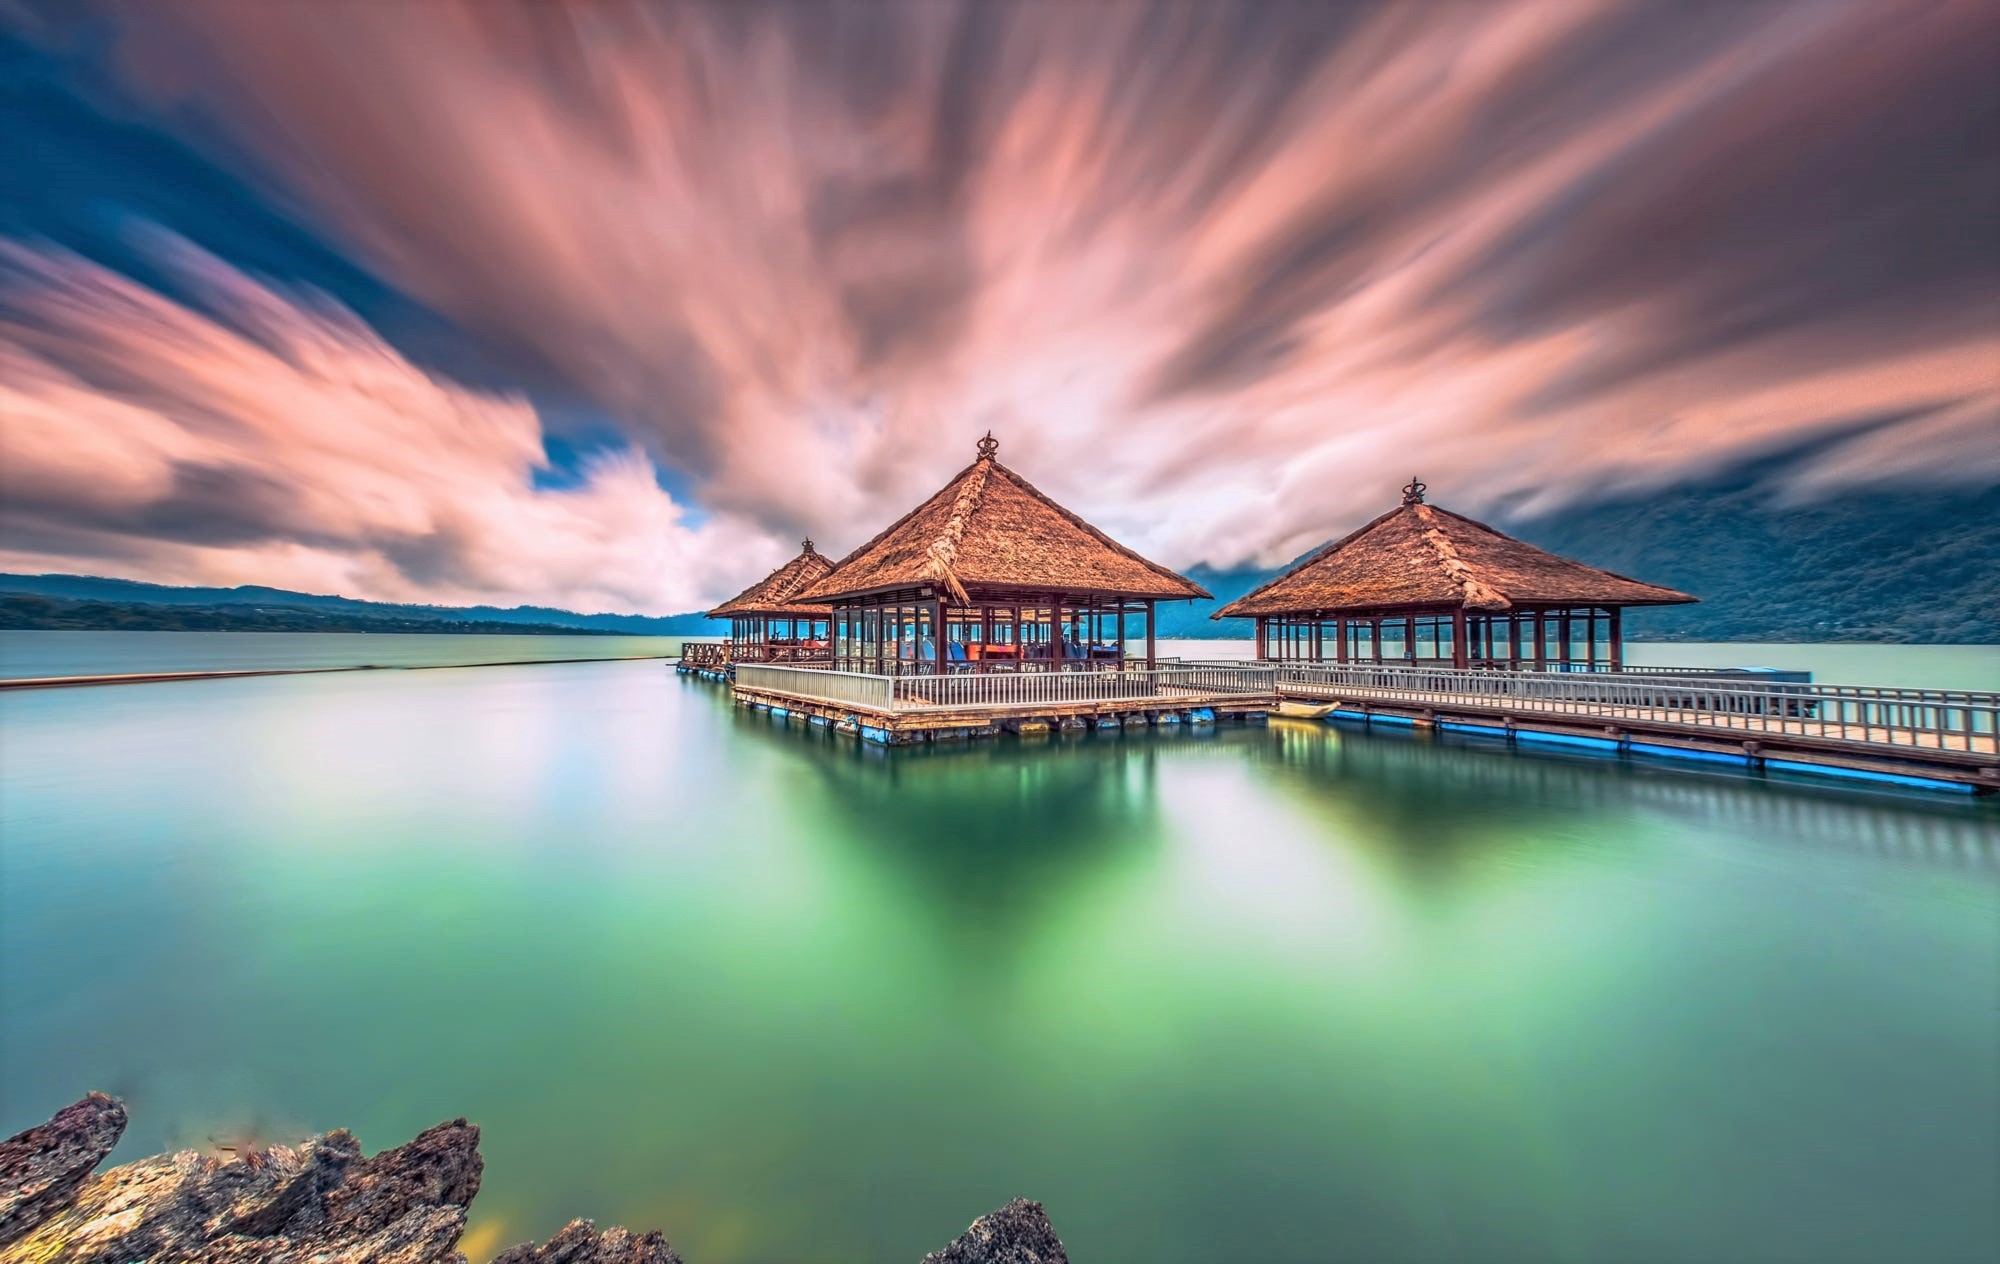 Beach Houses in Bali by Bertoni Siswanto